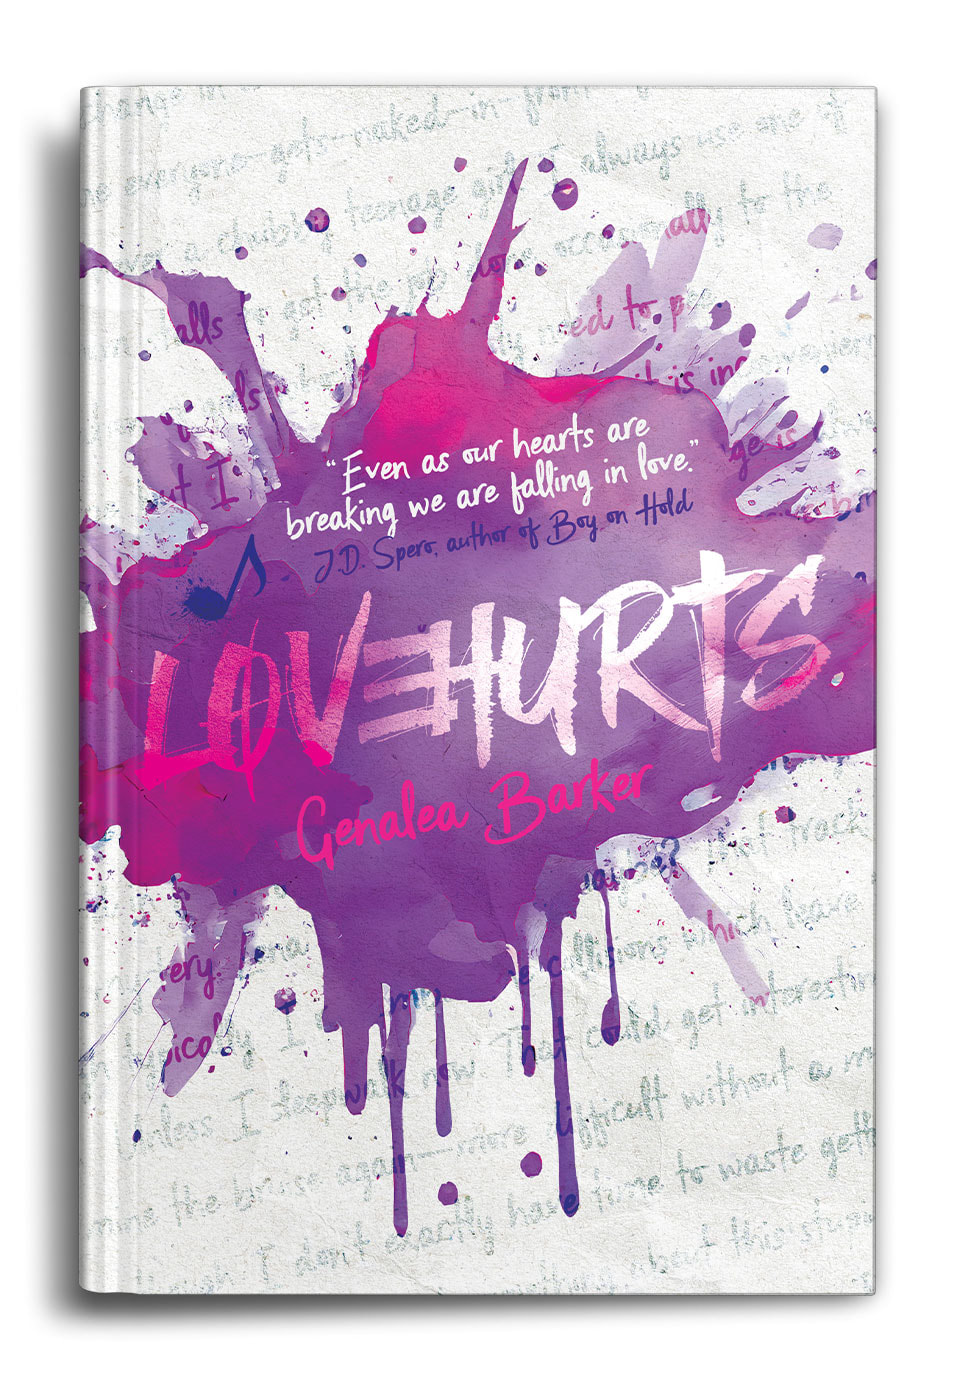 Love-hurts-by-Genalea-Barker